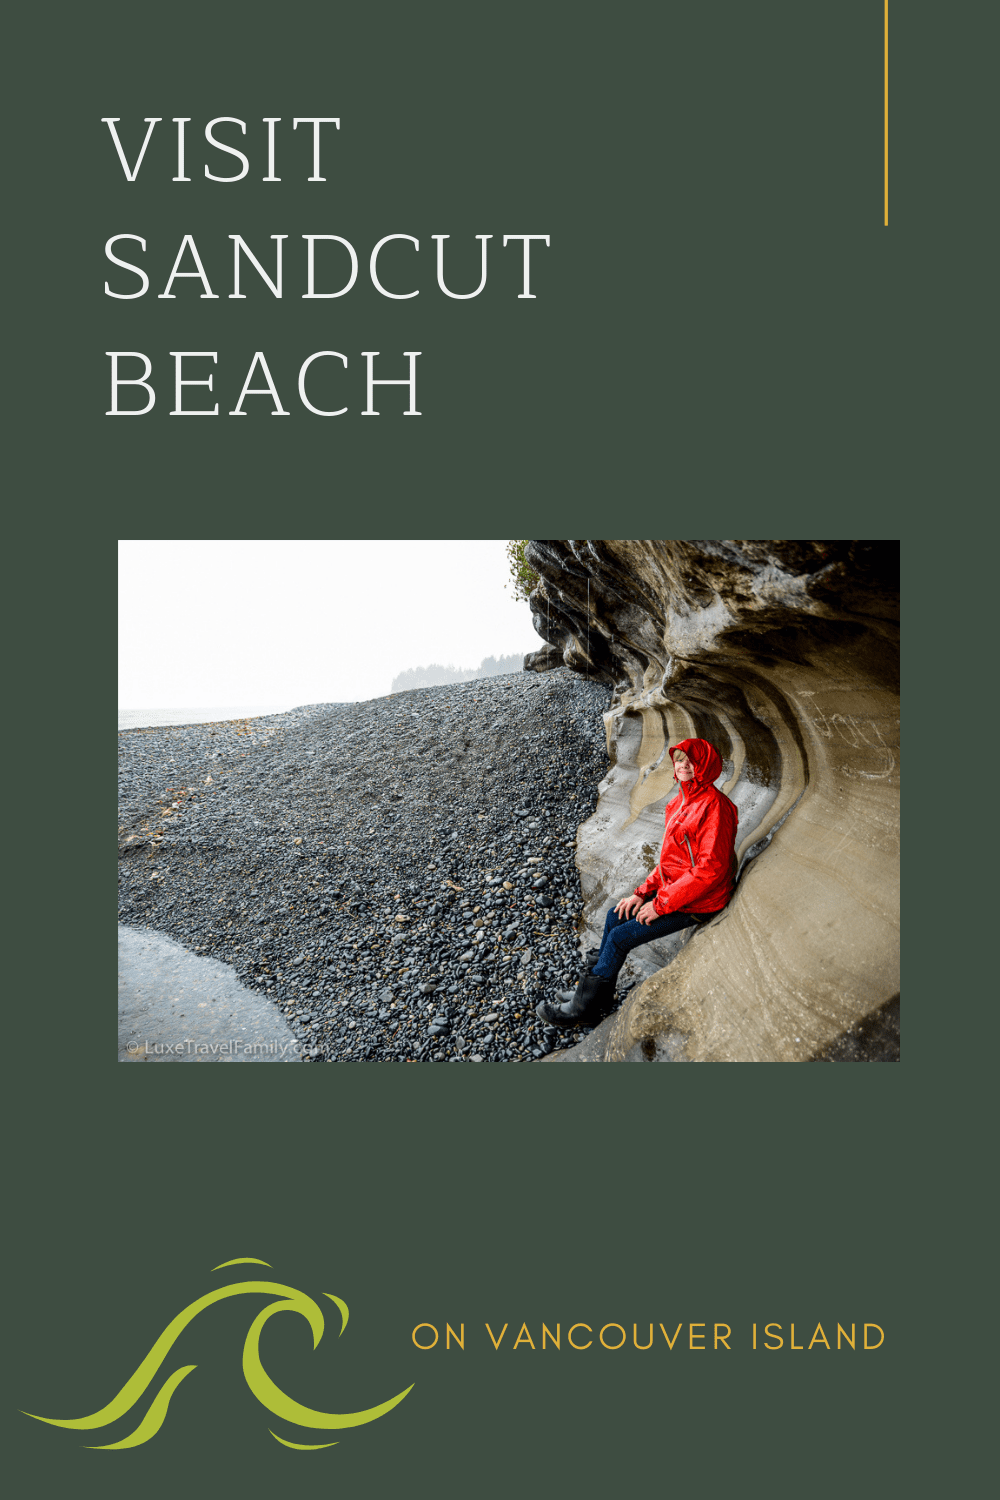 Sandcut Beach - A Local Treasure